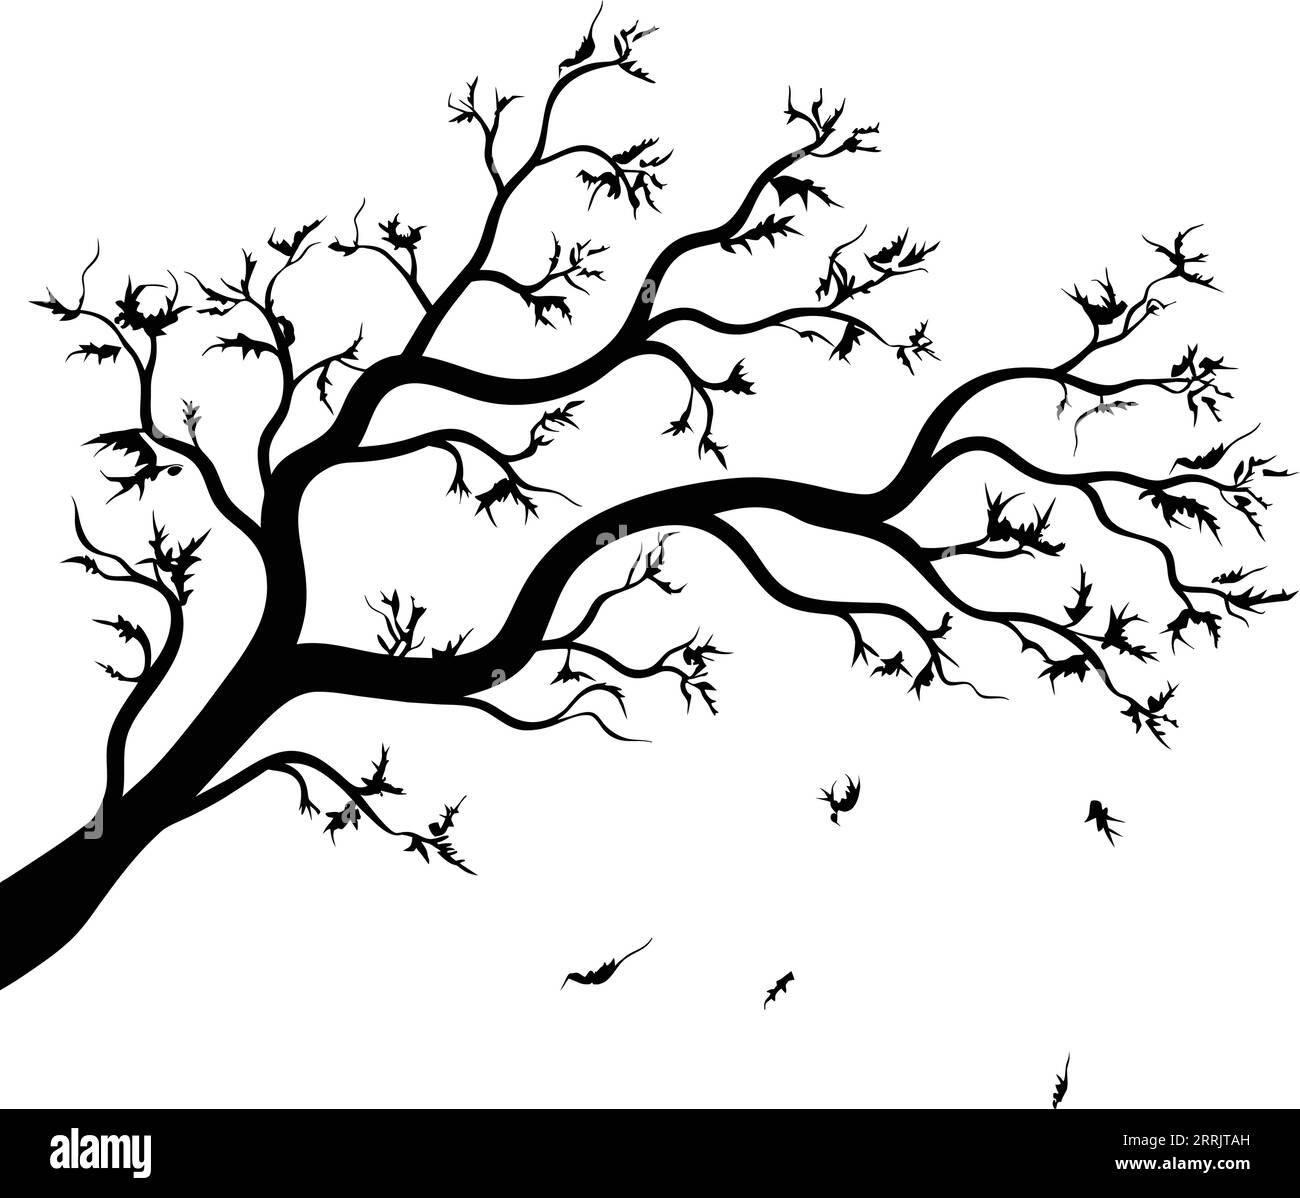 Trockener Zweig. Schwarze Vektorsilhouette eines alten trockenen Zweiges, der vom Baum auf weißem Hintergrund abfiel. Stock Vektor